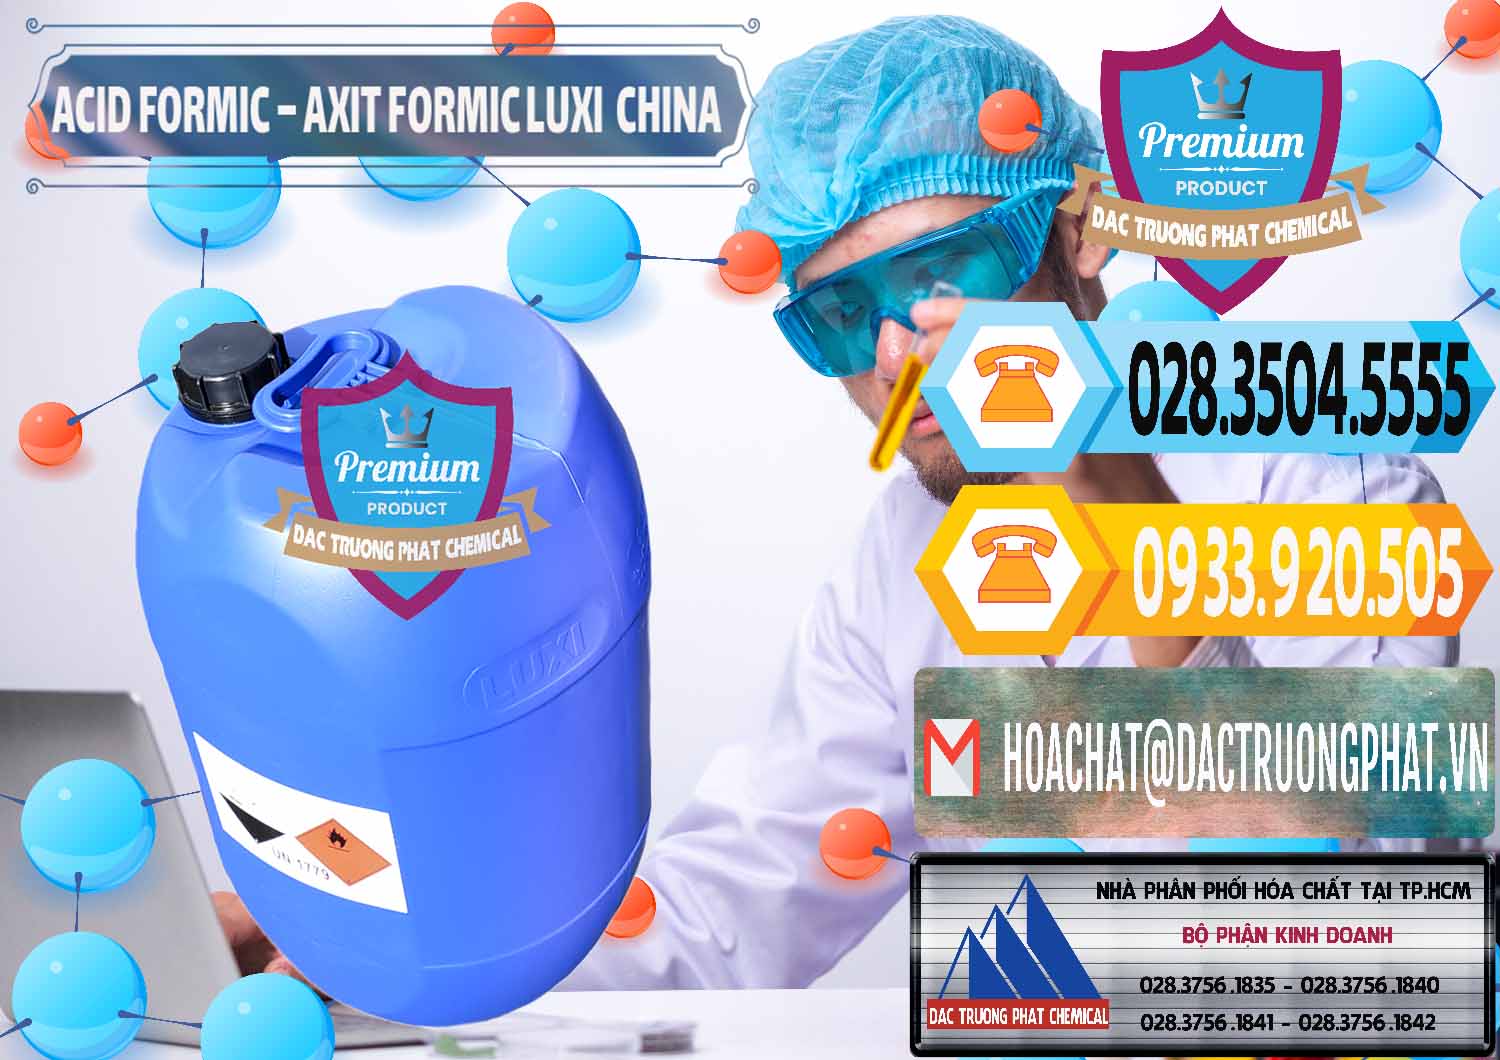 Nơi bán _ cung cấp Acid Formic - Axit Formic Luxi Trung Quốc China - 0029 - Nhà nhập khẩu _ phân phối hóa chất tại TP.HCM - hoachattayrua.net